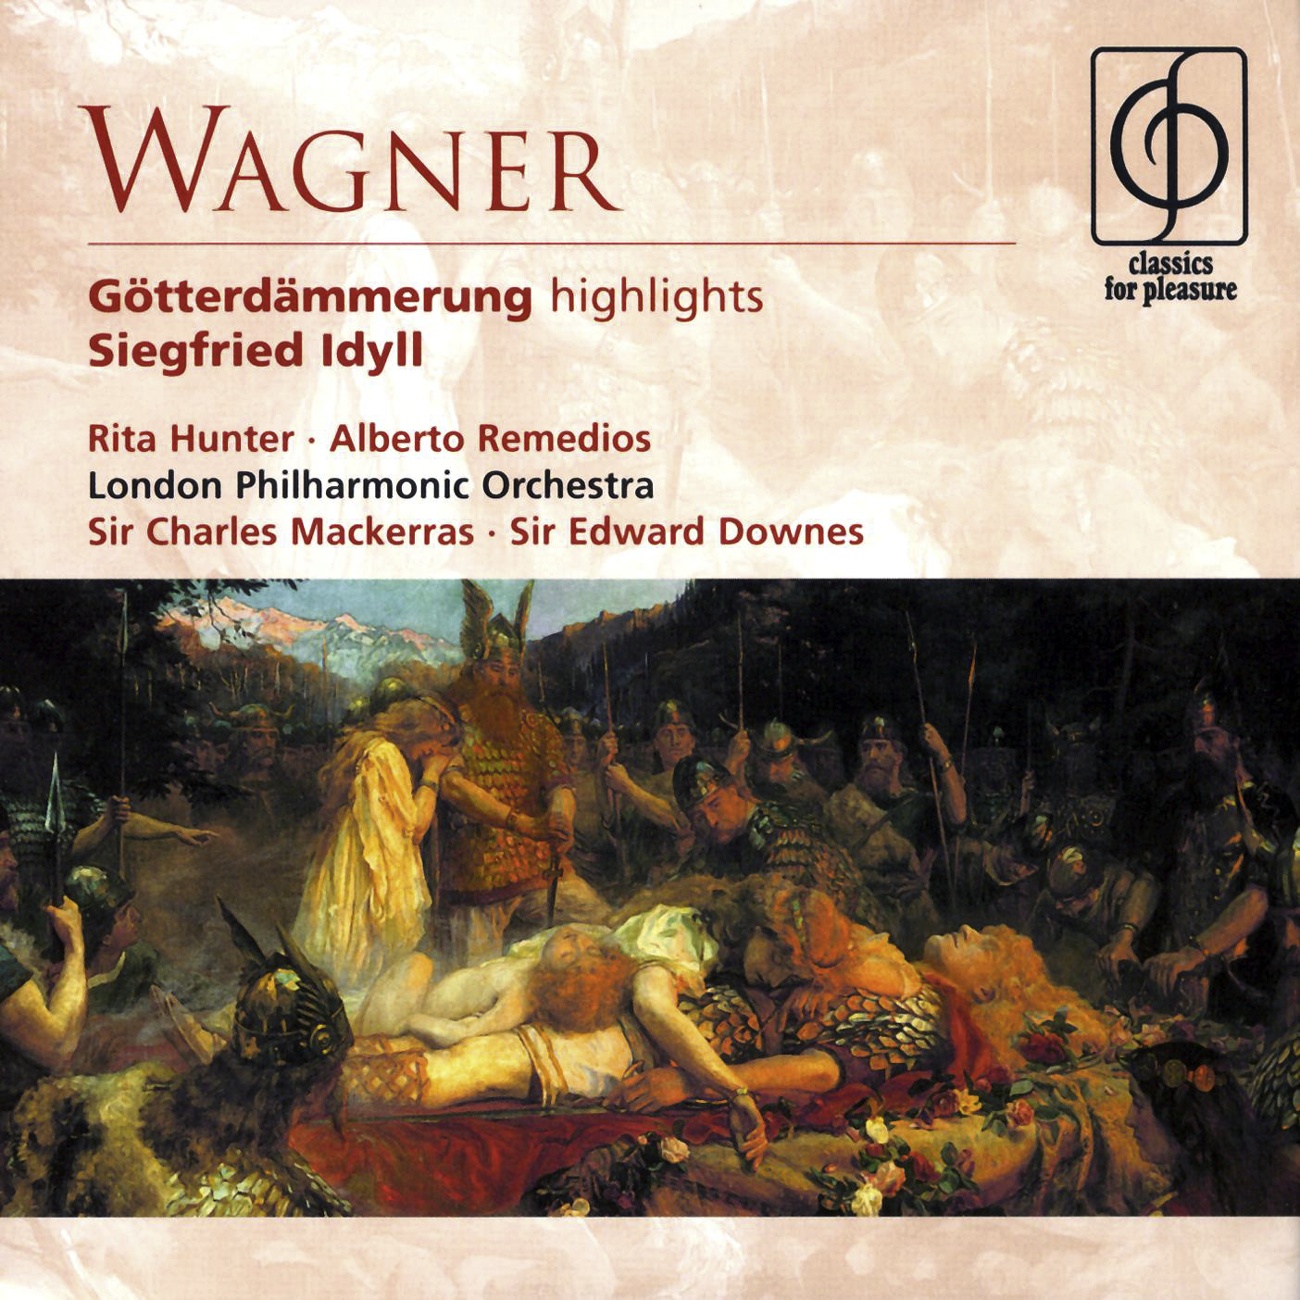 Wagner Gotterdammerung Highlights, Siegfried Idyll